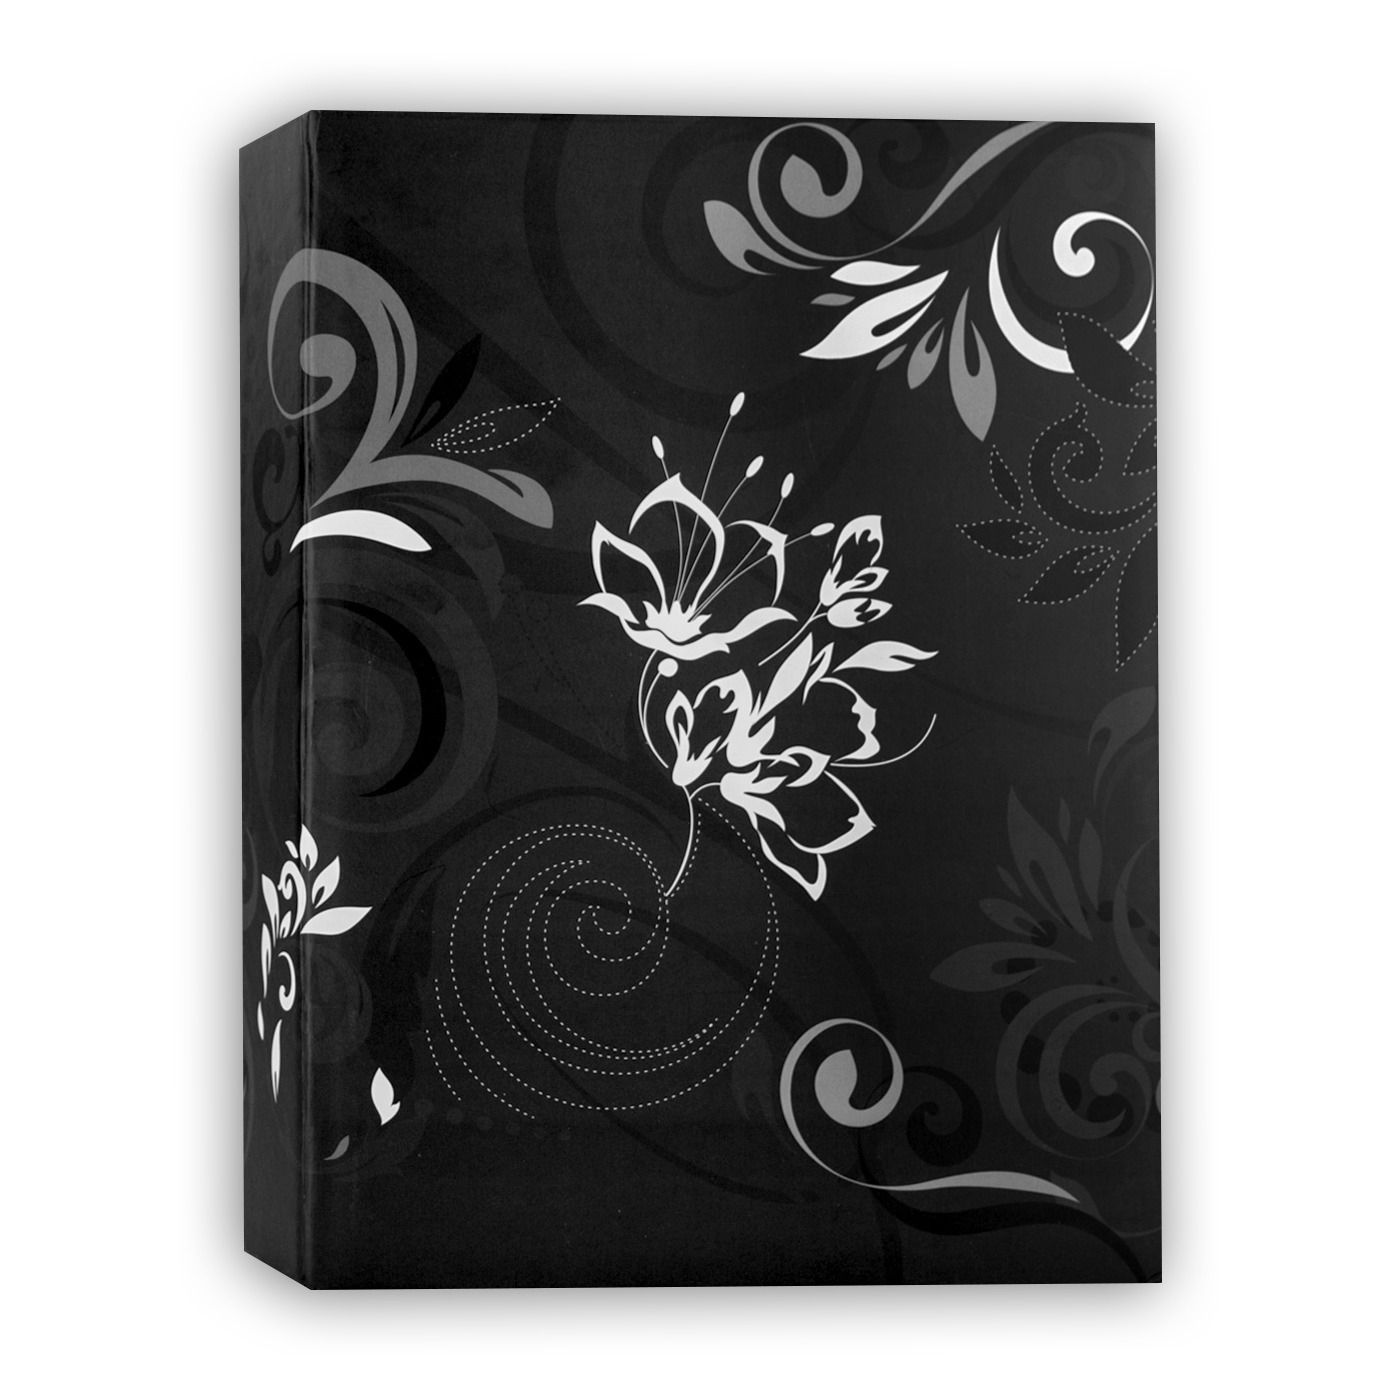 Fotoboek-fotoalbum Umbria met insteekhoesjes zwart bloemenprint voor 100 fotos 13 x 16,5 x 5 cm